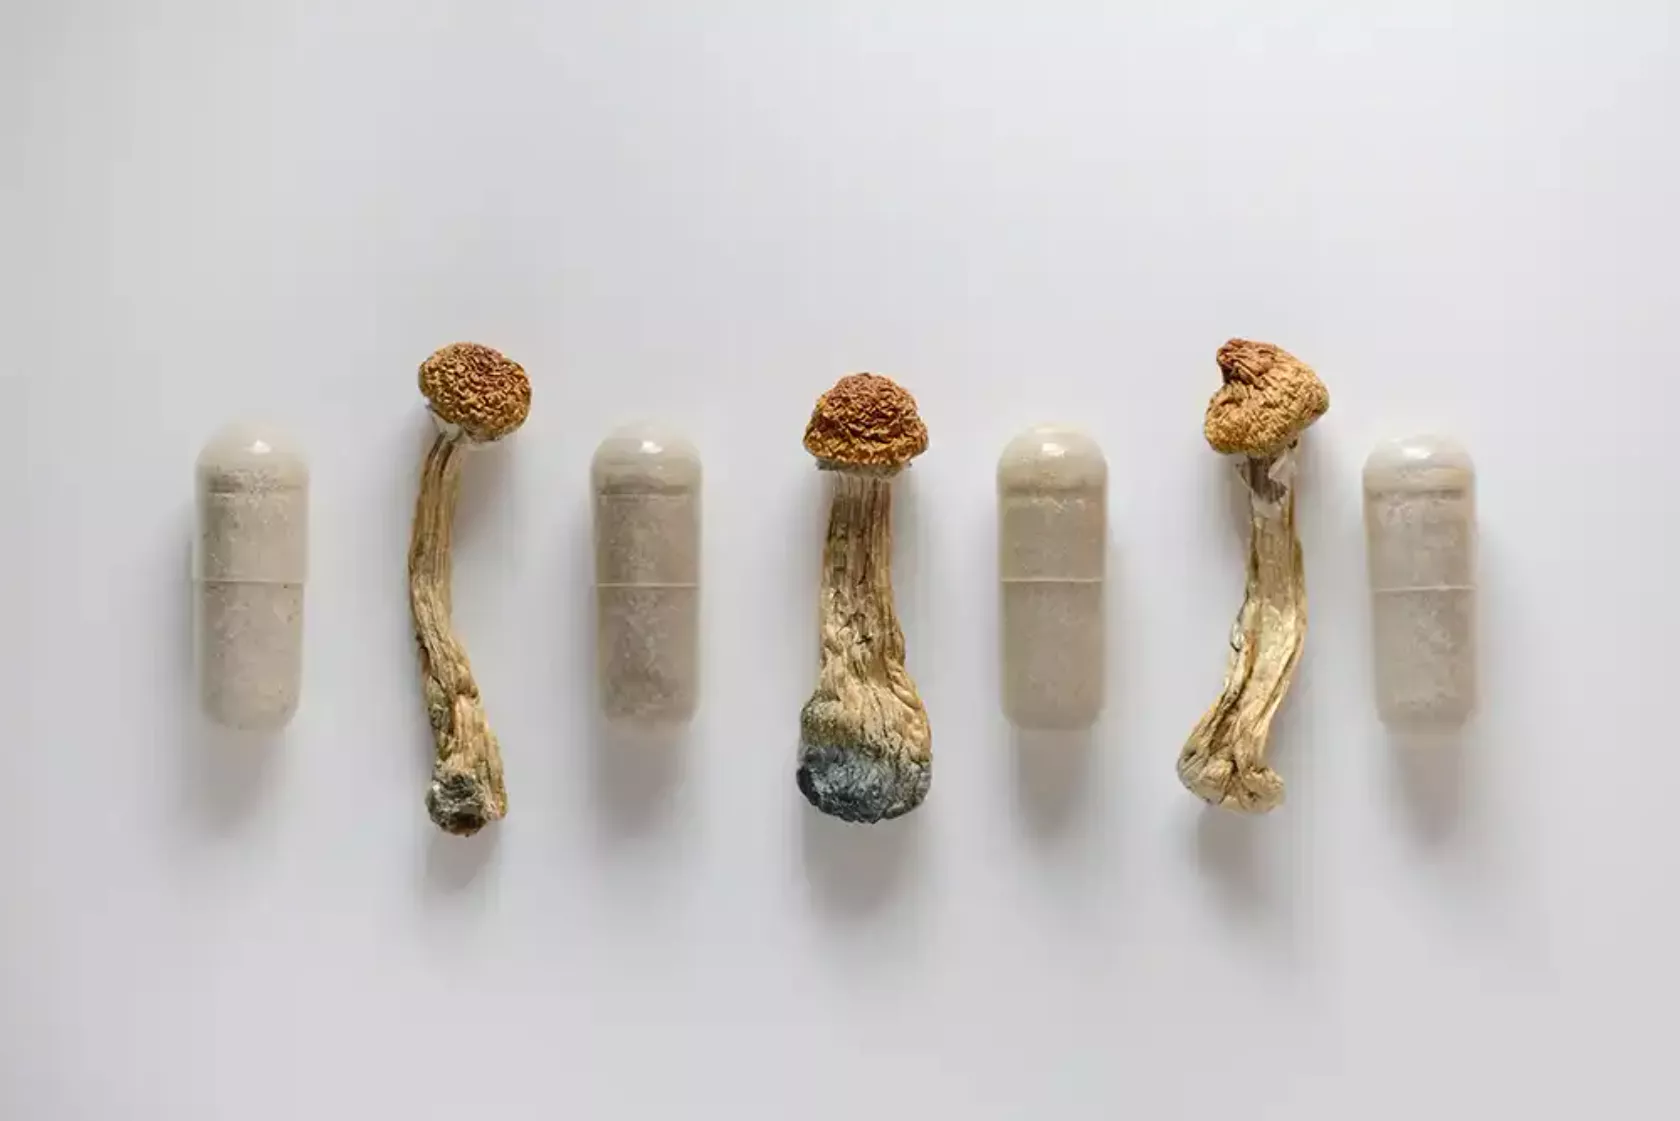 Kleine Magic Mushrooms mit dem Wirkstoff Psilocybin und Kapseln mit dem Pulver der Pilze.